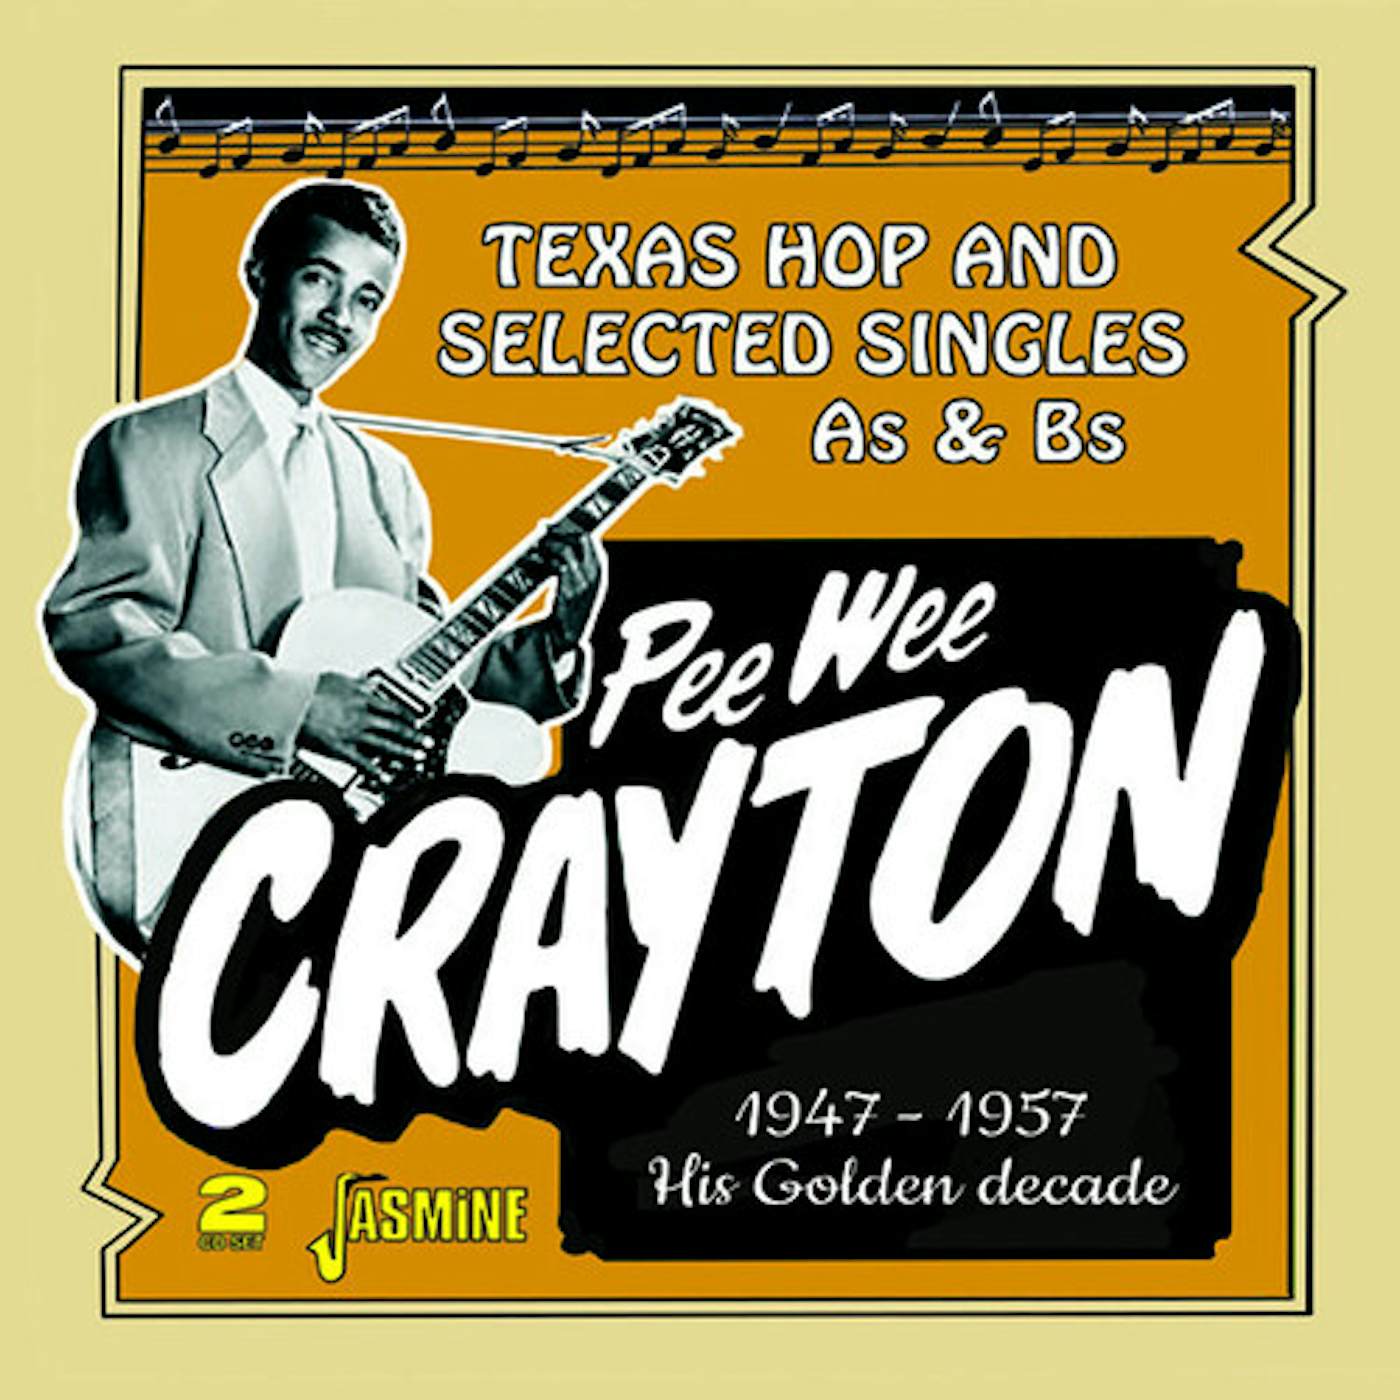 Pee Wee Crayton GOLDEN DECADE: TEXAS HOP & SELECTED SINGLES CD